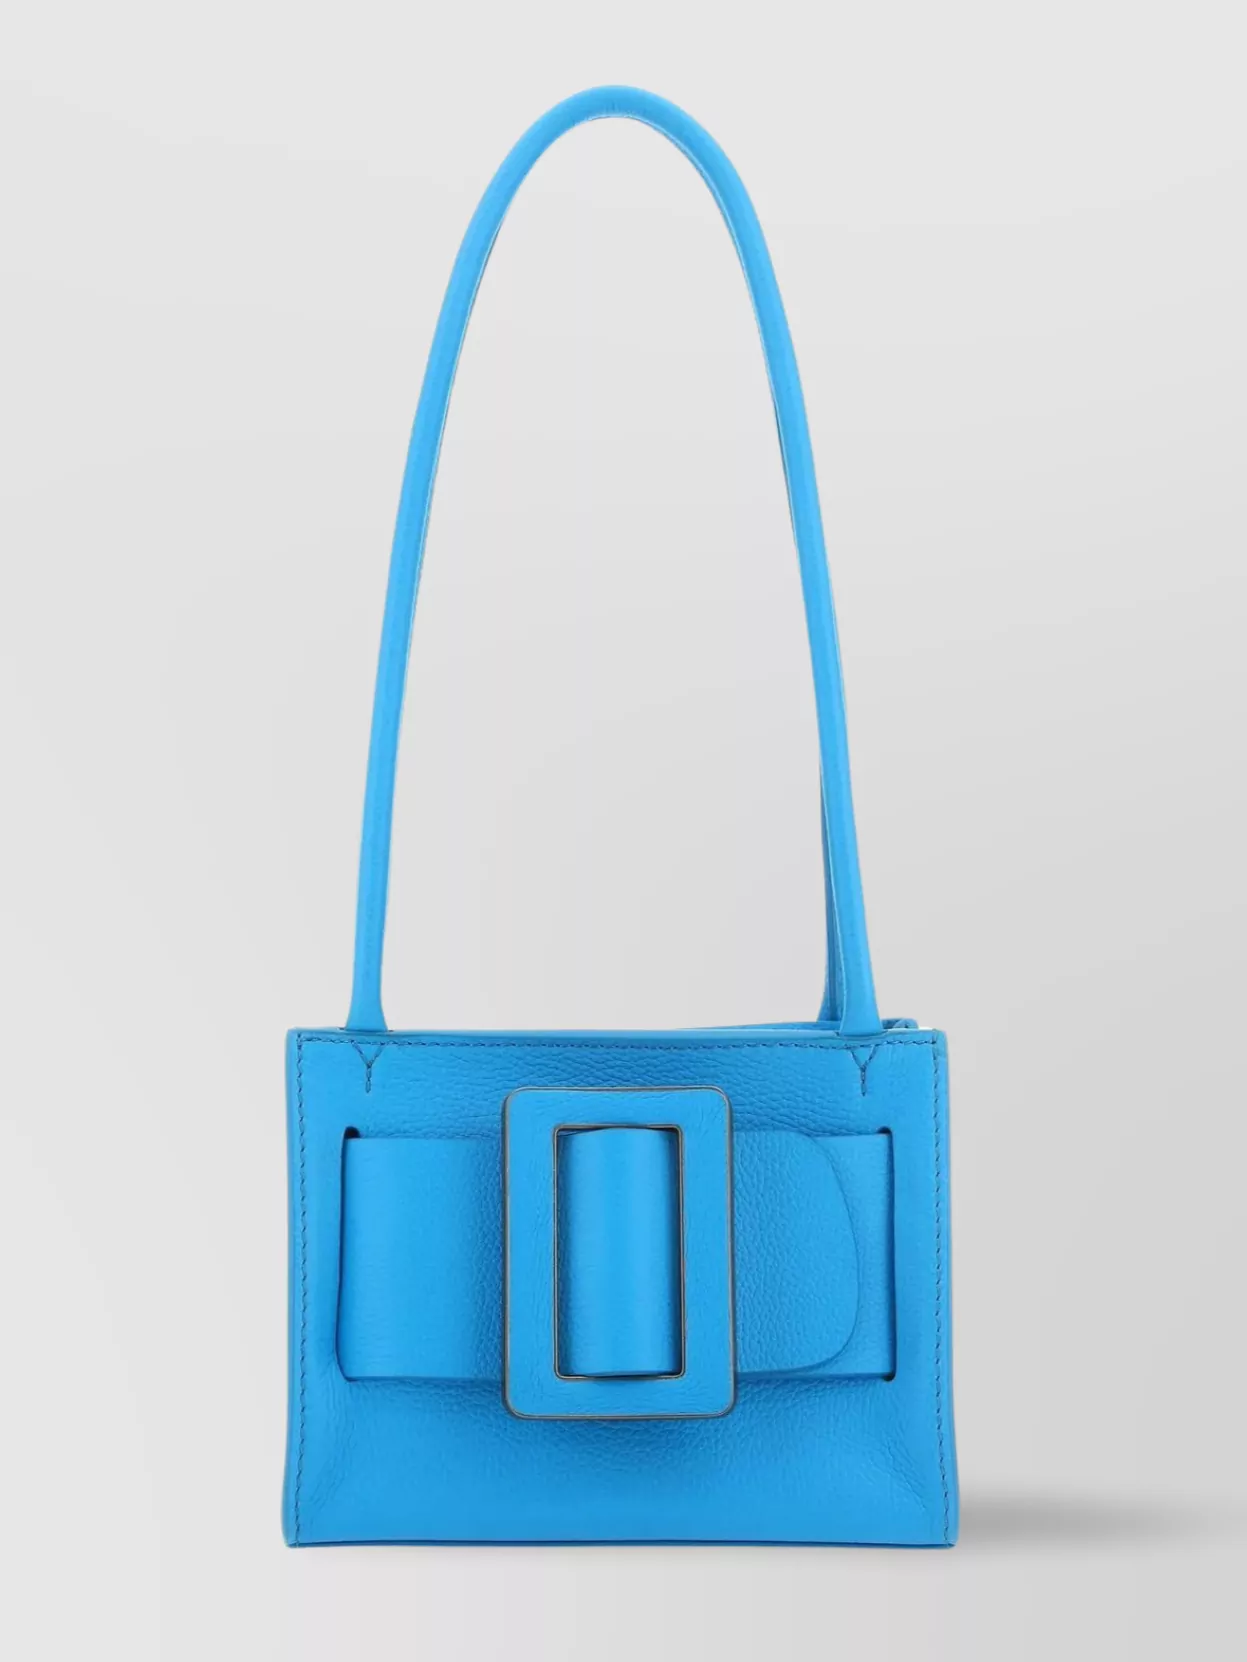 Boyy 18 Soft Shoulder Bag With Rectangular Shape In Blue